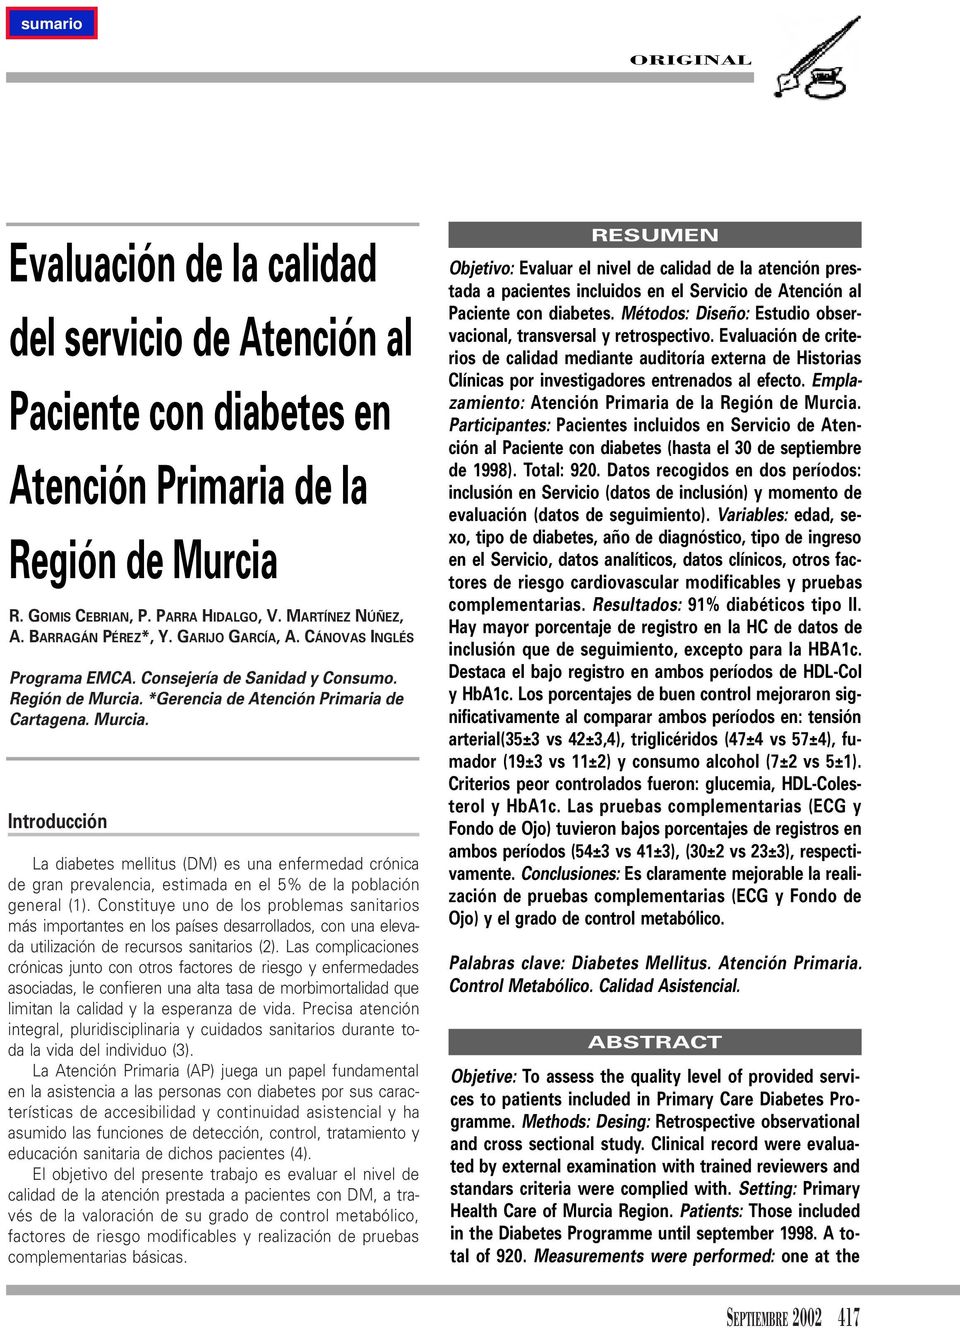 *Gerencia de Atención Primaria de Cartagena. Murcia. Introducción La diabetes mellitus (DM) es una enfermedad crónica de gran prevalencia, estimada en el 5% de la población general (1).